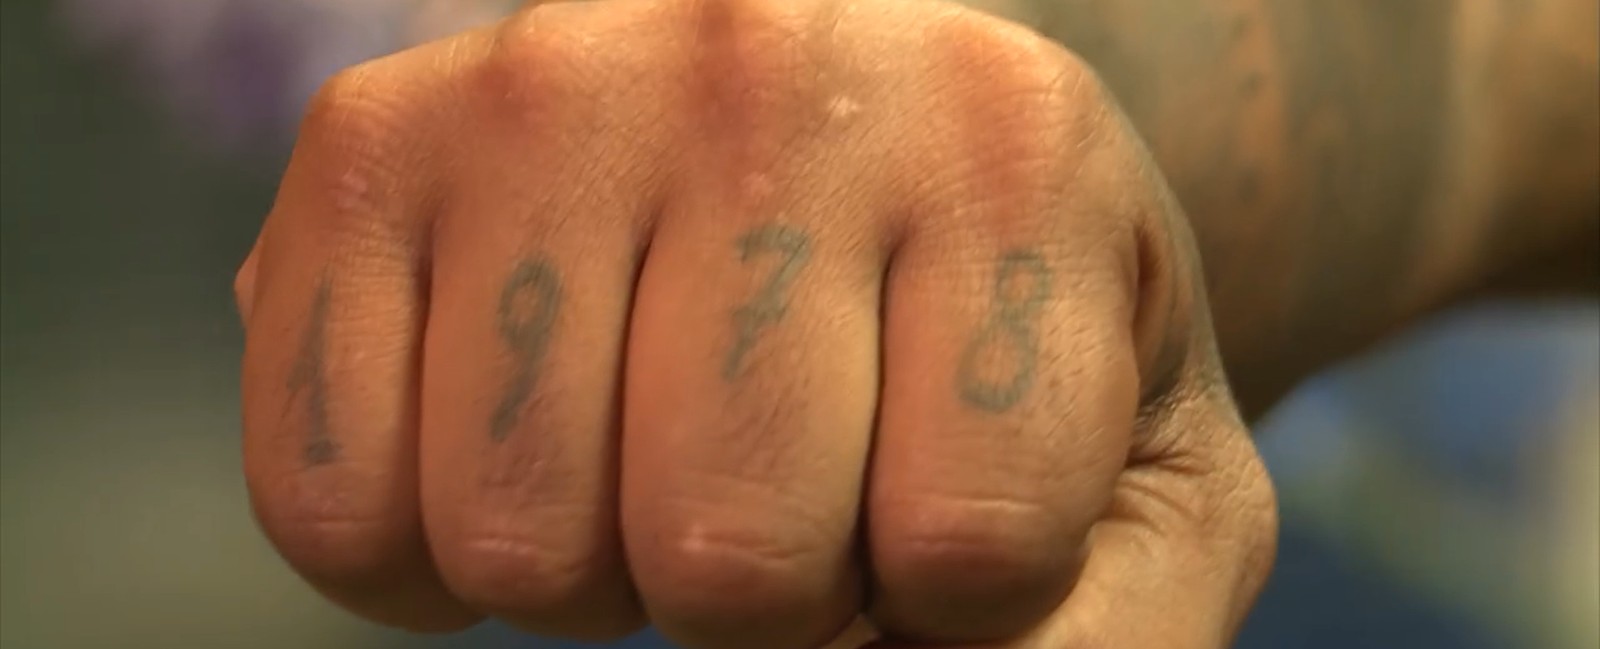 Rodriguinho tem data de nascimento tatuada nos dedos da mão: 1978 — Foto: Reprodução/TV Globo